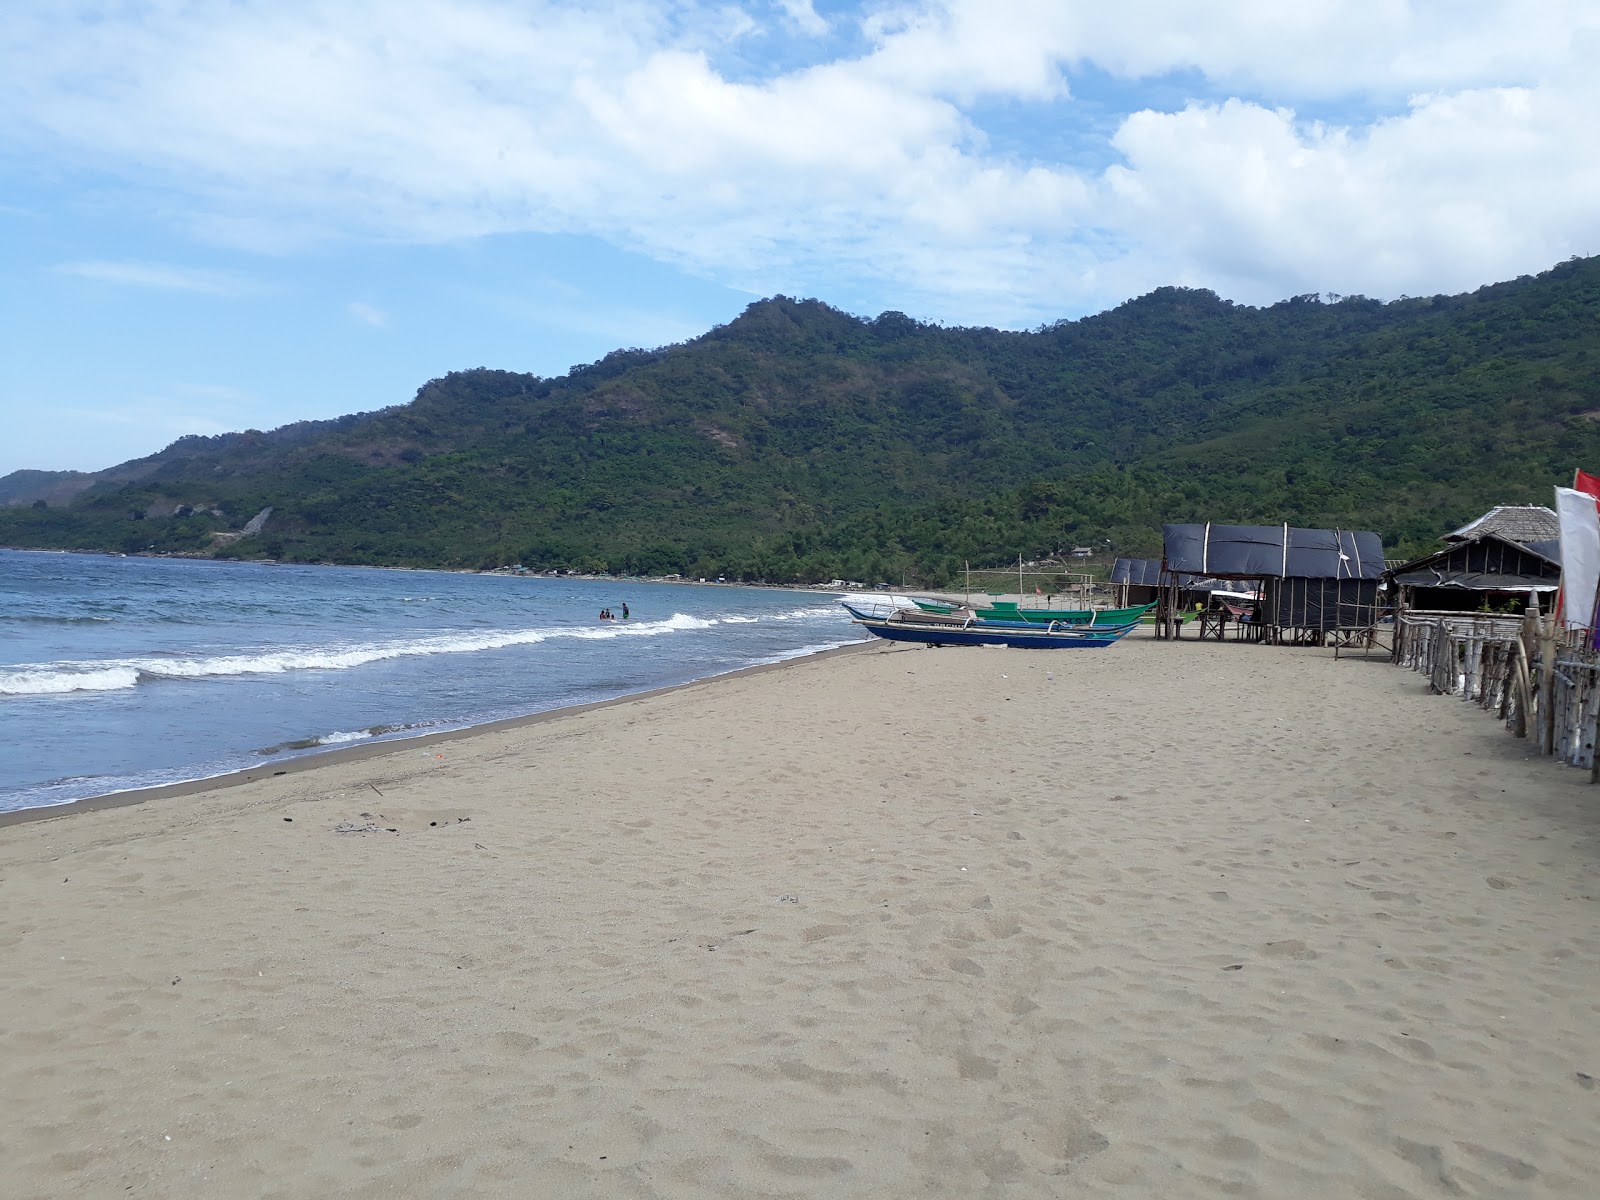 Photo de Patungan beach - endroit populaire parmi les connaisseurs de la détente